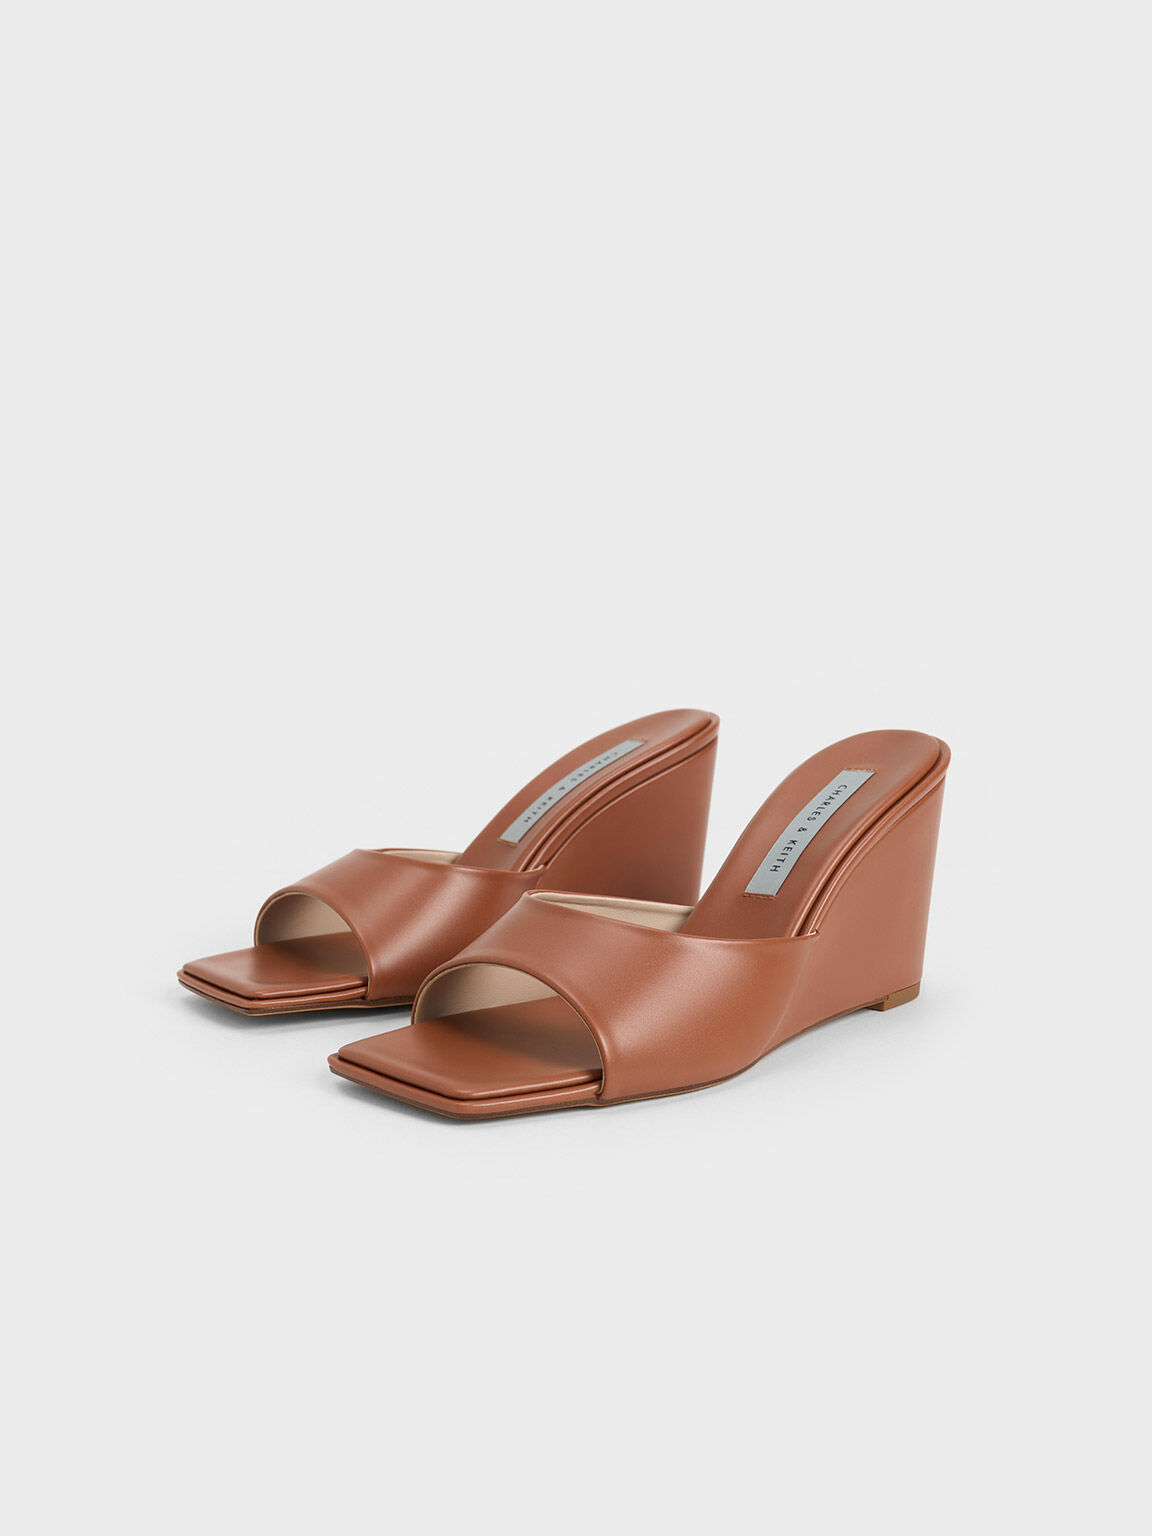 Sepatu Wedges Square-Toe, Brown, hi-res